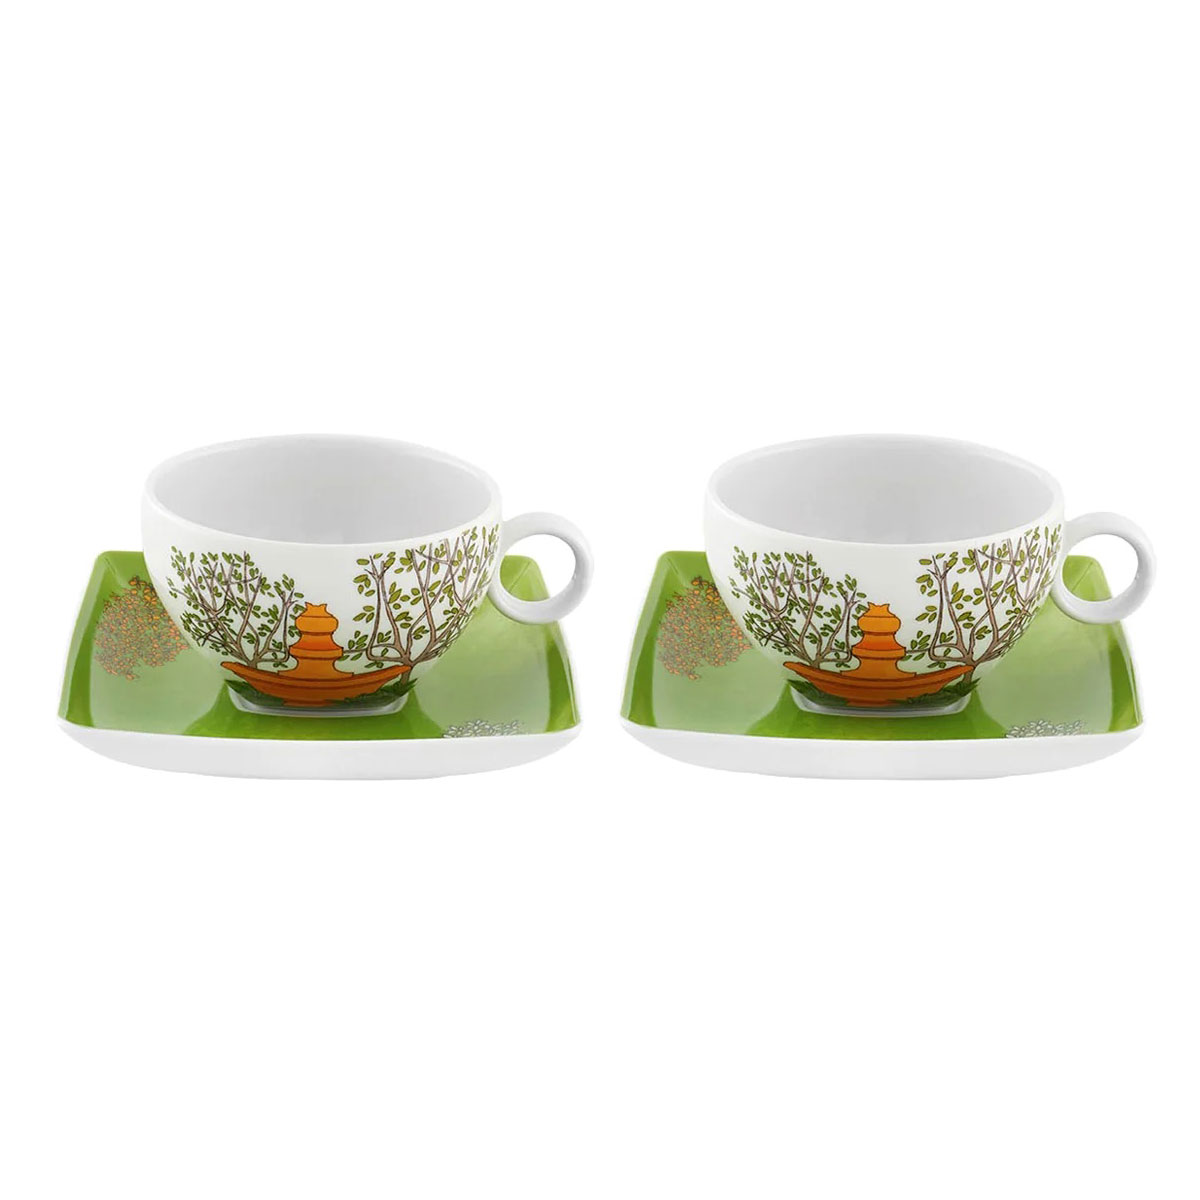 Vista Alegre Porcelain Alma De Lisboa Set 2 Tea Cup and Saucer